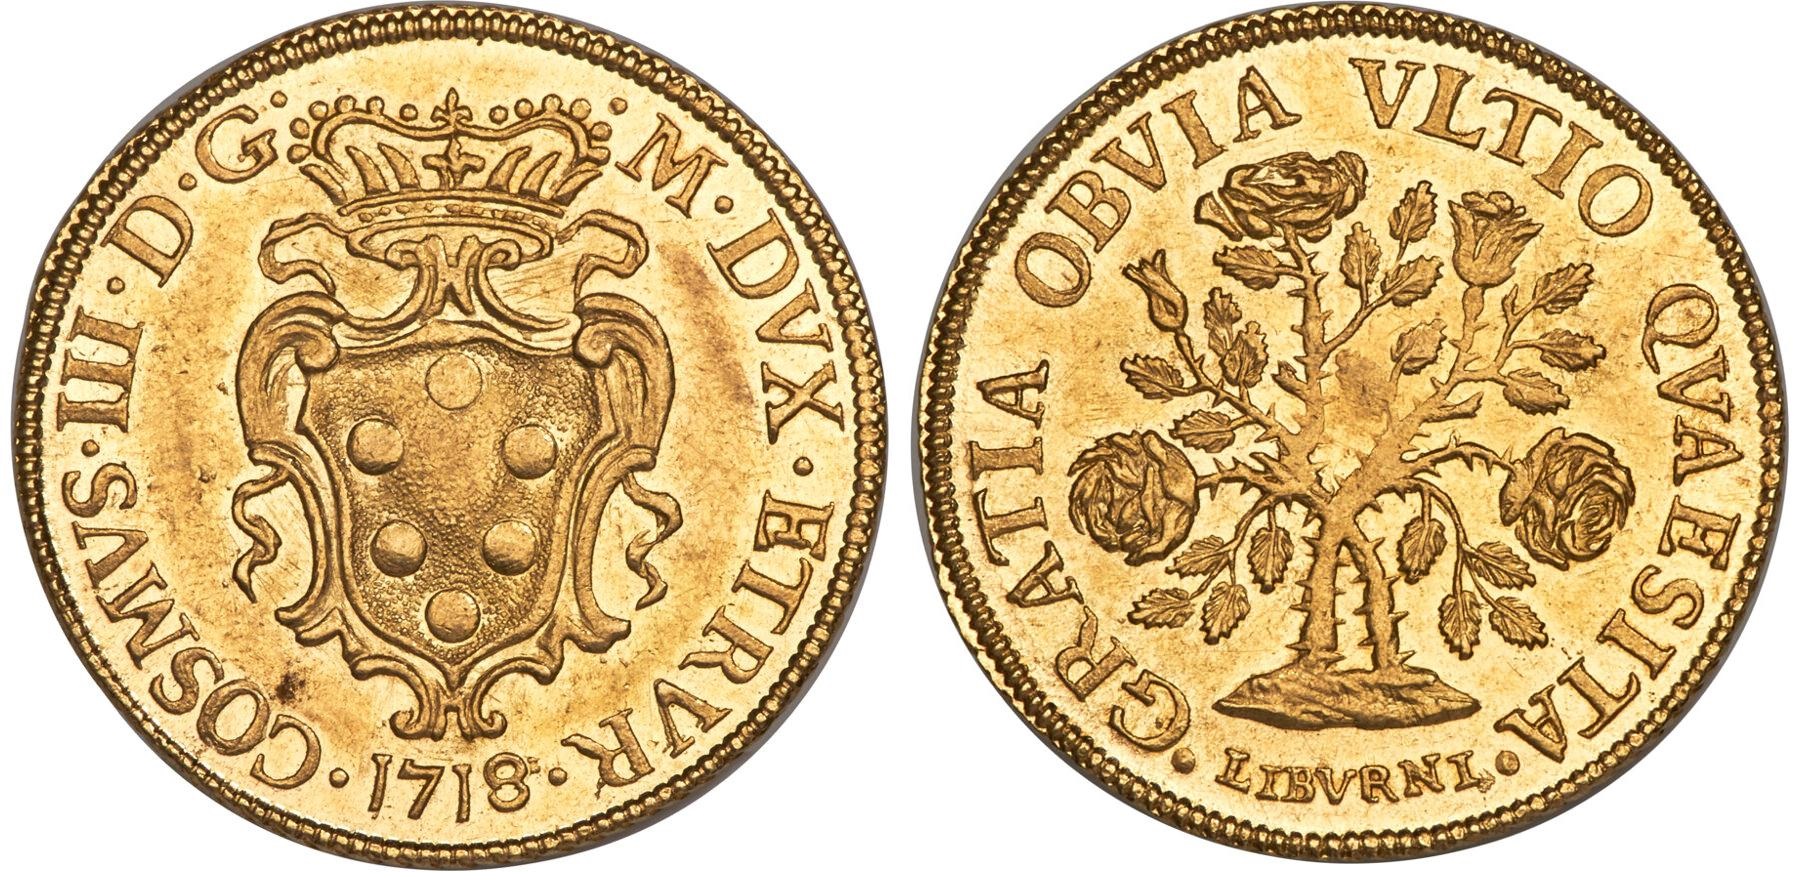 MAgnifico esemplare di mezza pezza della rosa in oro del 1718, regnante Cosimo III de' Medici indicato al dritto come M . DVX . ETRVR . ossia come granduca d'Etruria